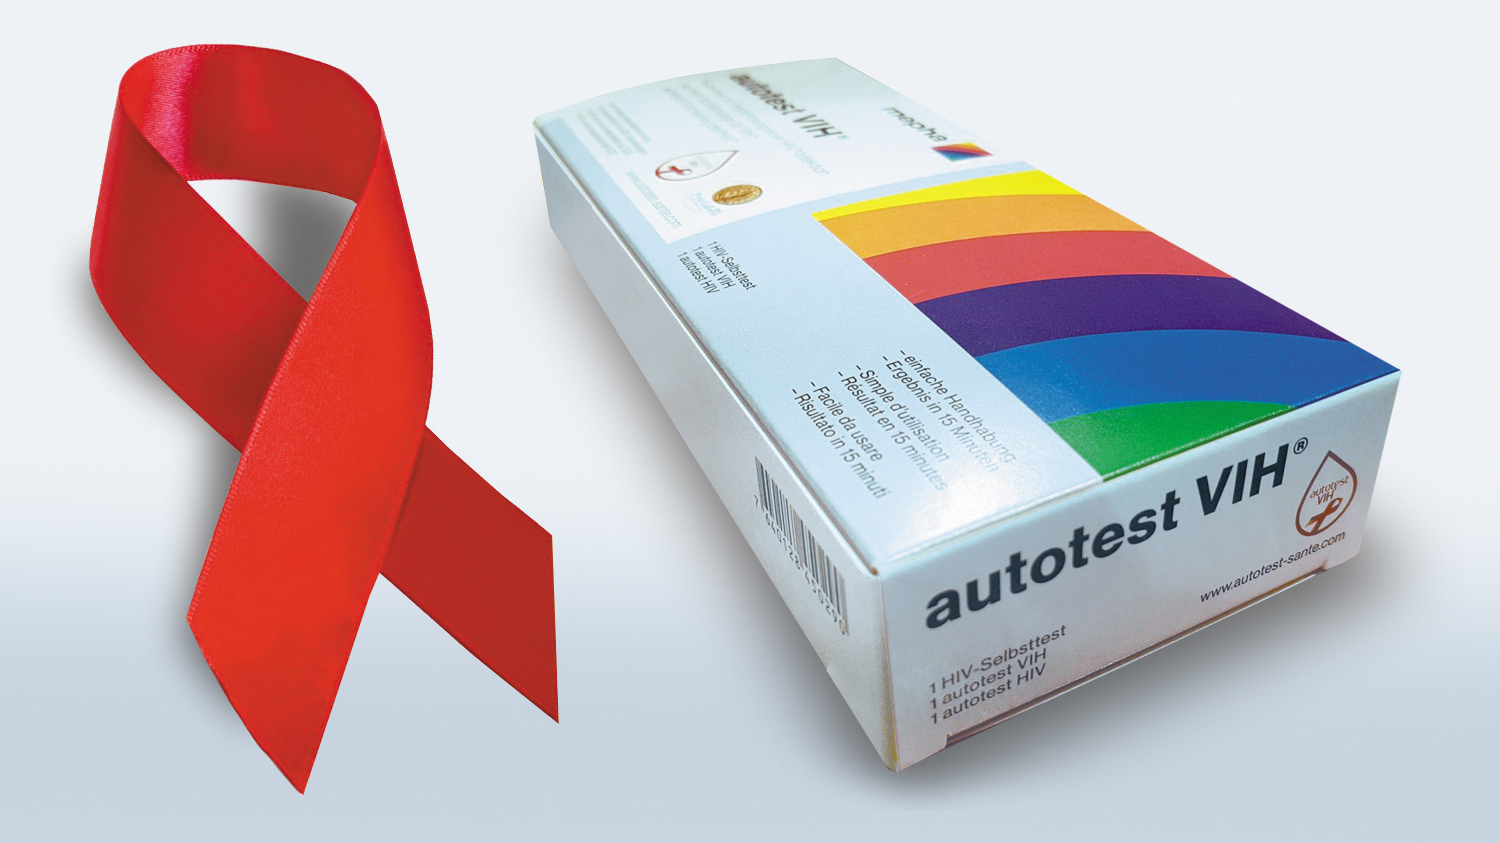 La plupart des pharmaciens neuchâtelois vendent les nouveaux autotests de dépistage du sida. Mais certains refusent de le faire.